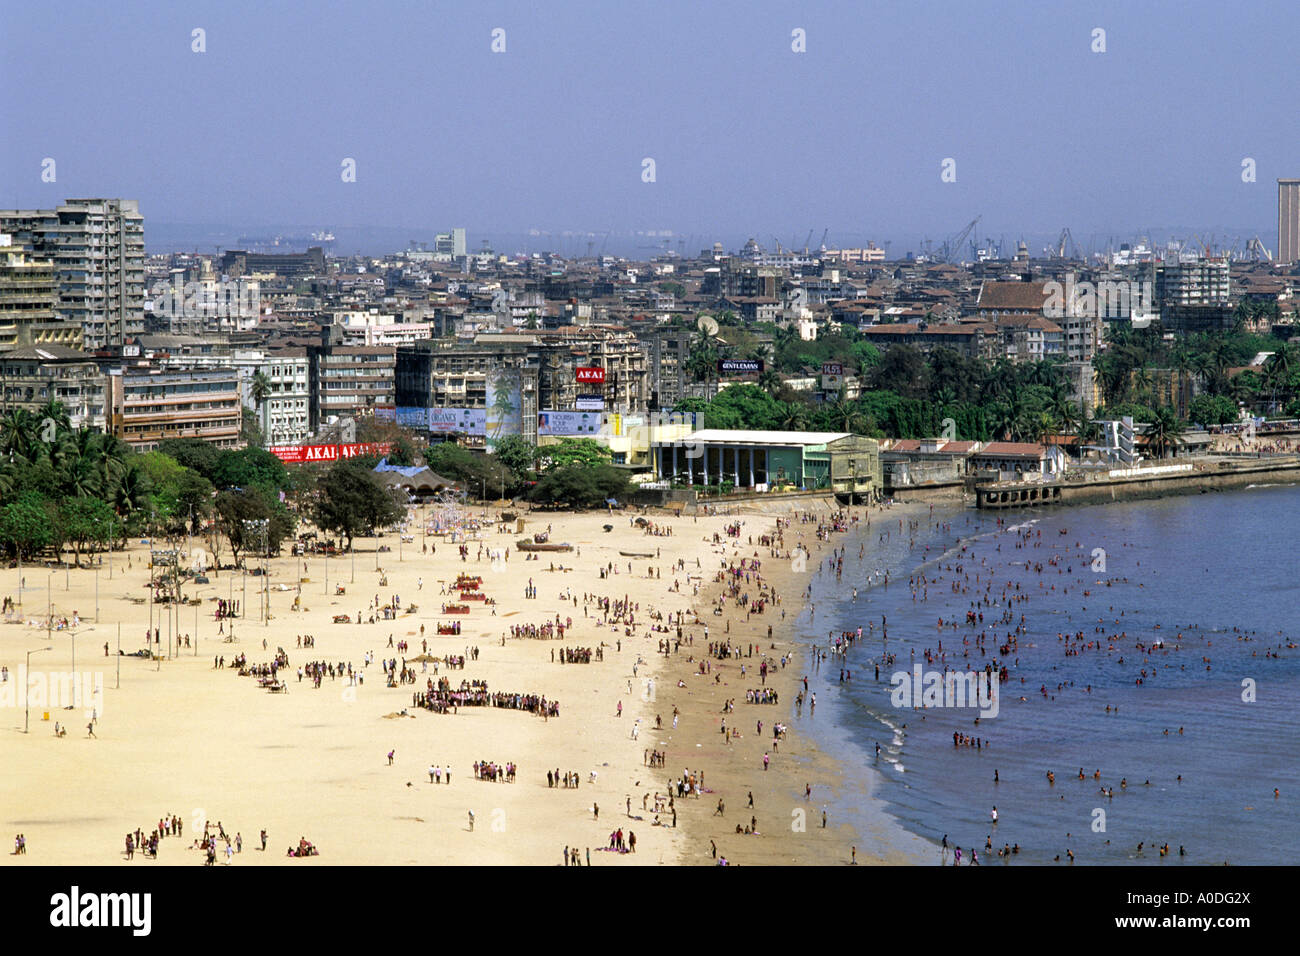 La plage de Chowpatty et la ville de Mumbai Bombay Inde Banque D'Images